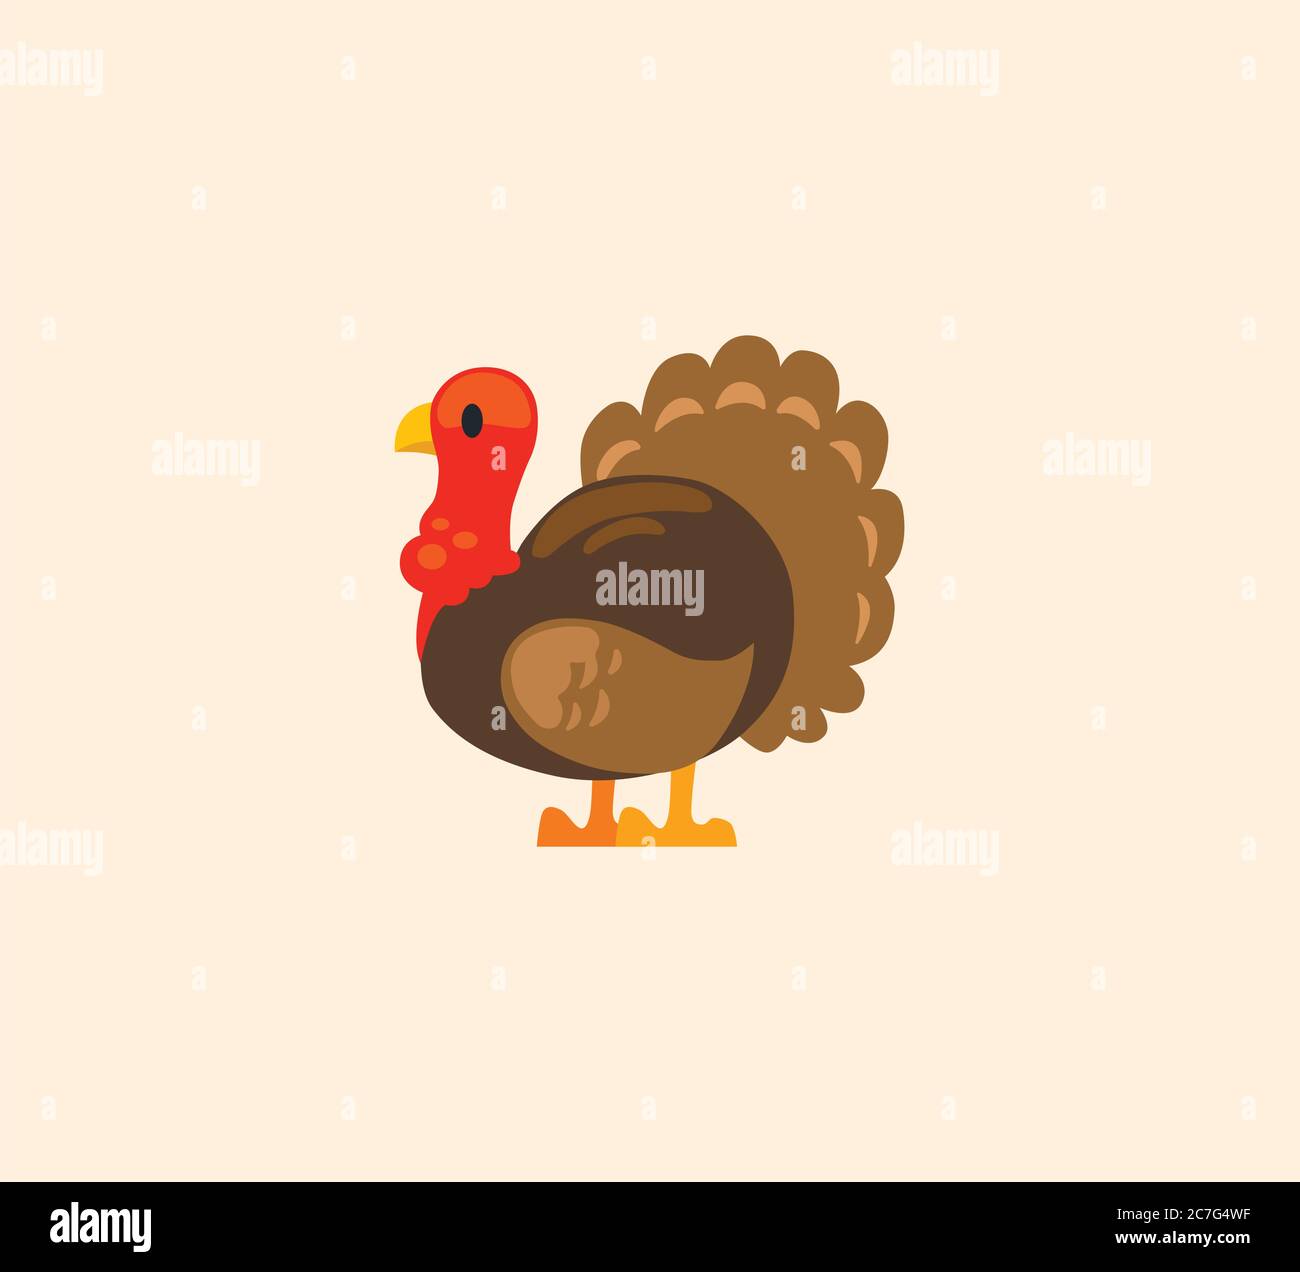 Turkey bird vector isolated illustration. Turkey icon Stock Vector